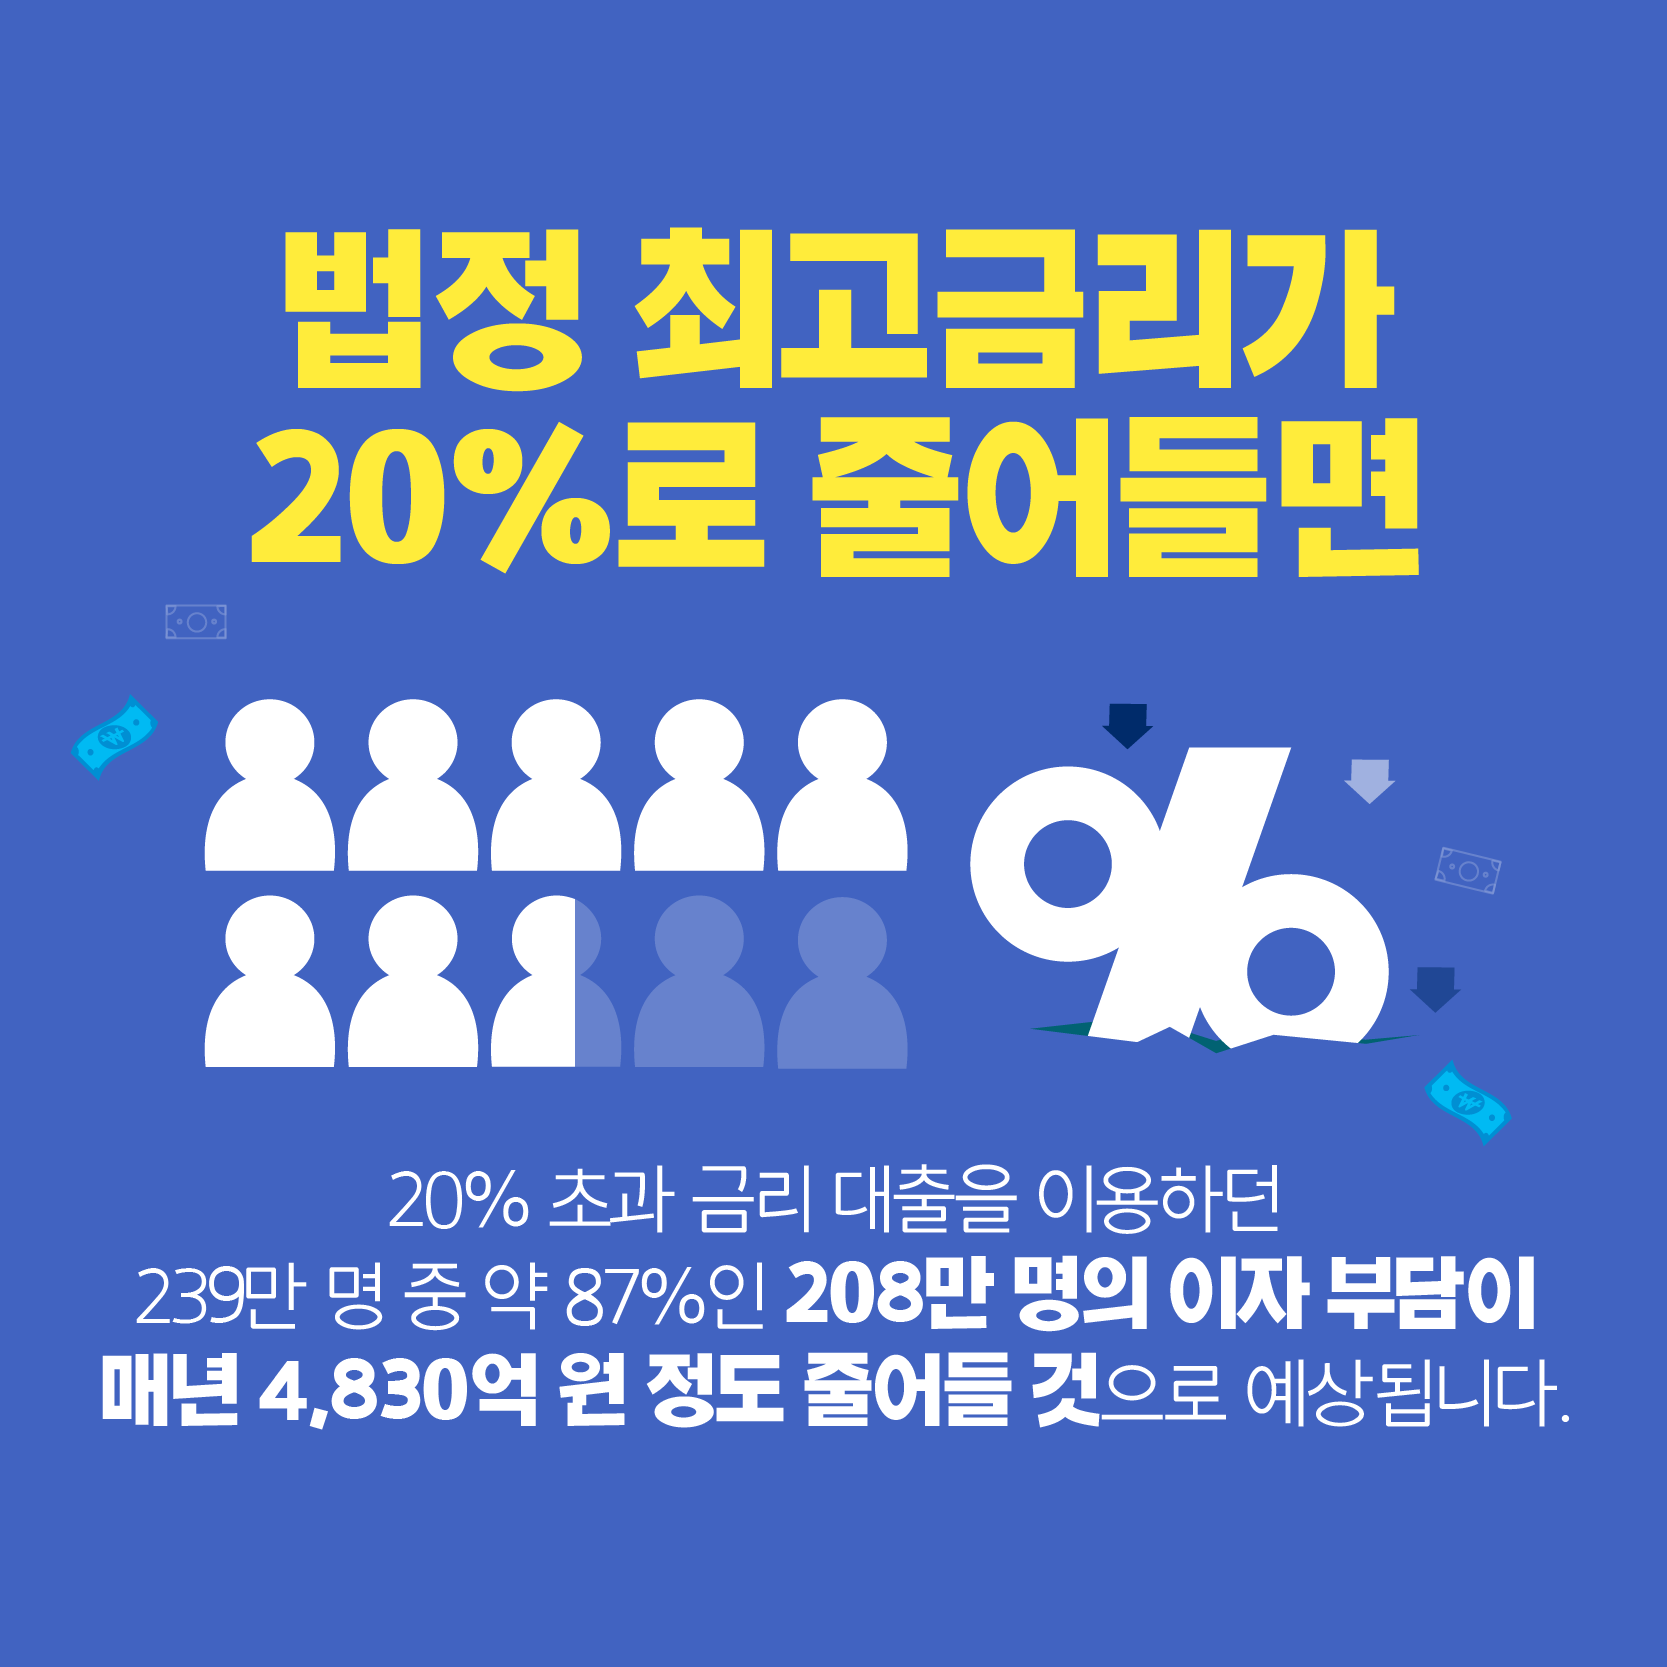 [카드뉴스] 2021년 7월 7일부터 법정 최고금리 20%로 인하